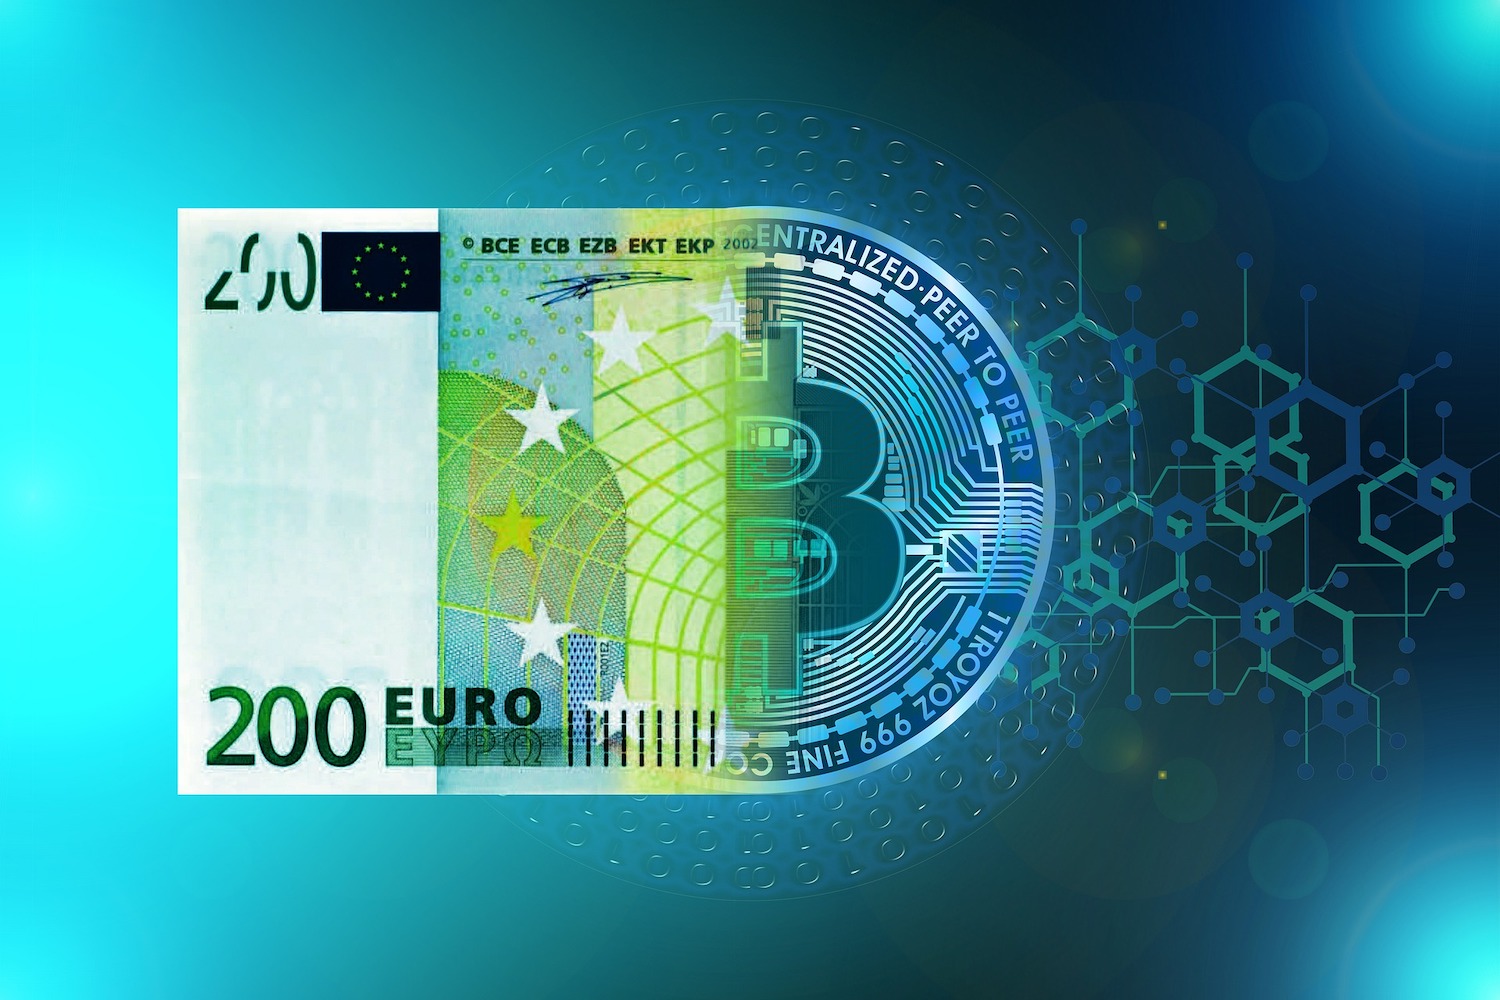 Convertiți Bitcoins (BTC) şi Euro (EUR): Calculator schimb valutar